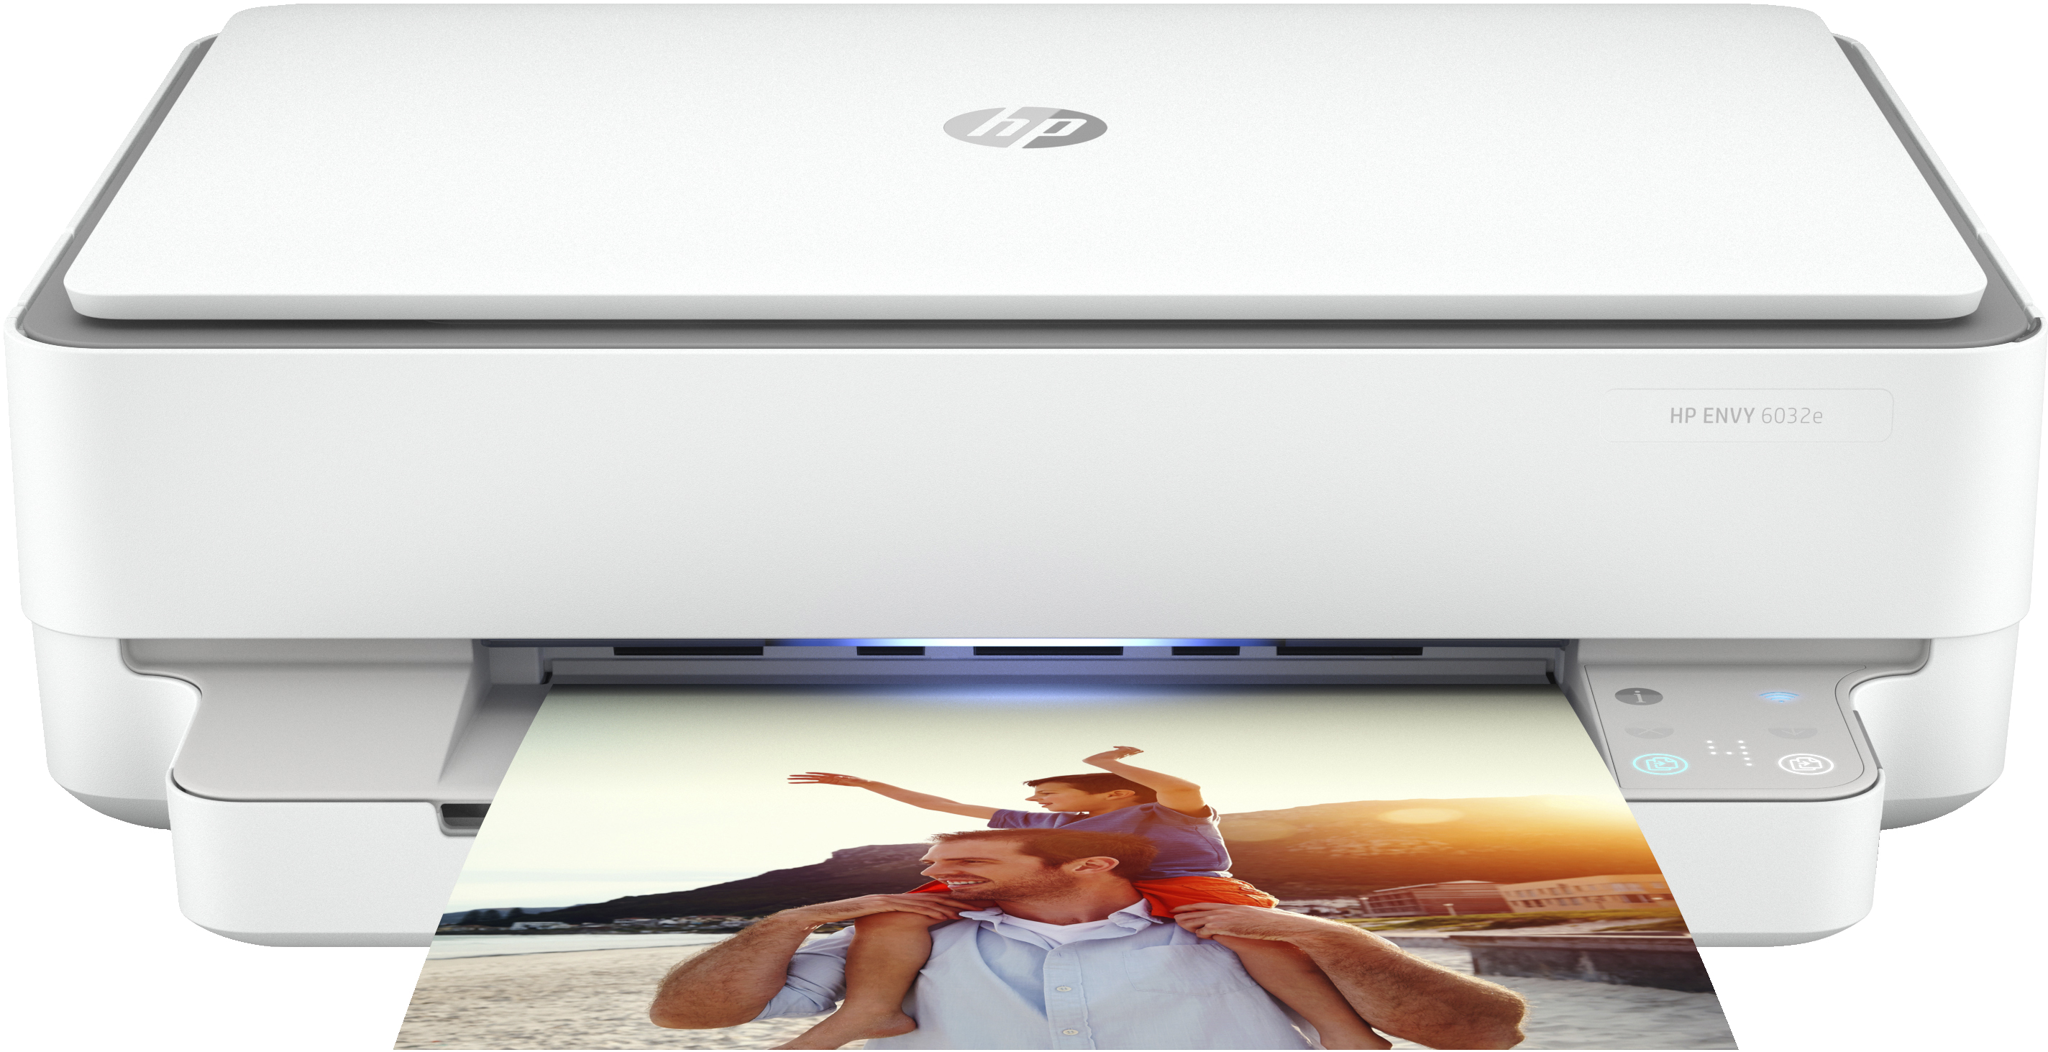 Bild von HP ENVY 6032e - Thermal Inkjet - Farbdruck - 4800 x 1200 DPI - Farbkopieren - A4 - Weiß